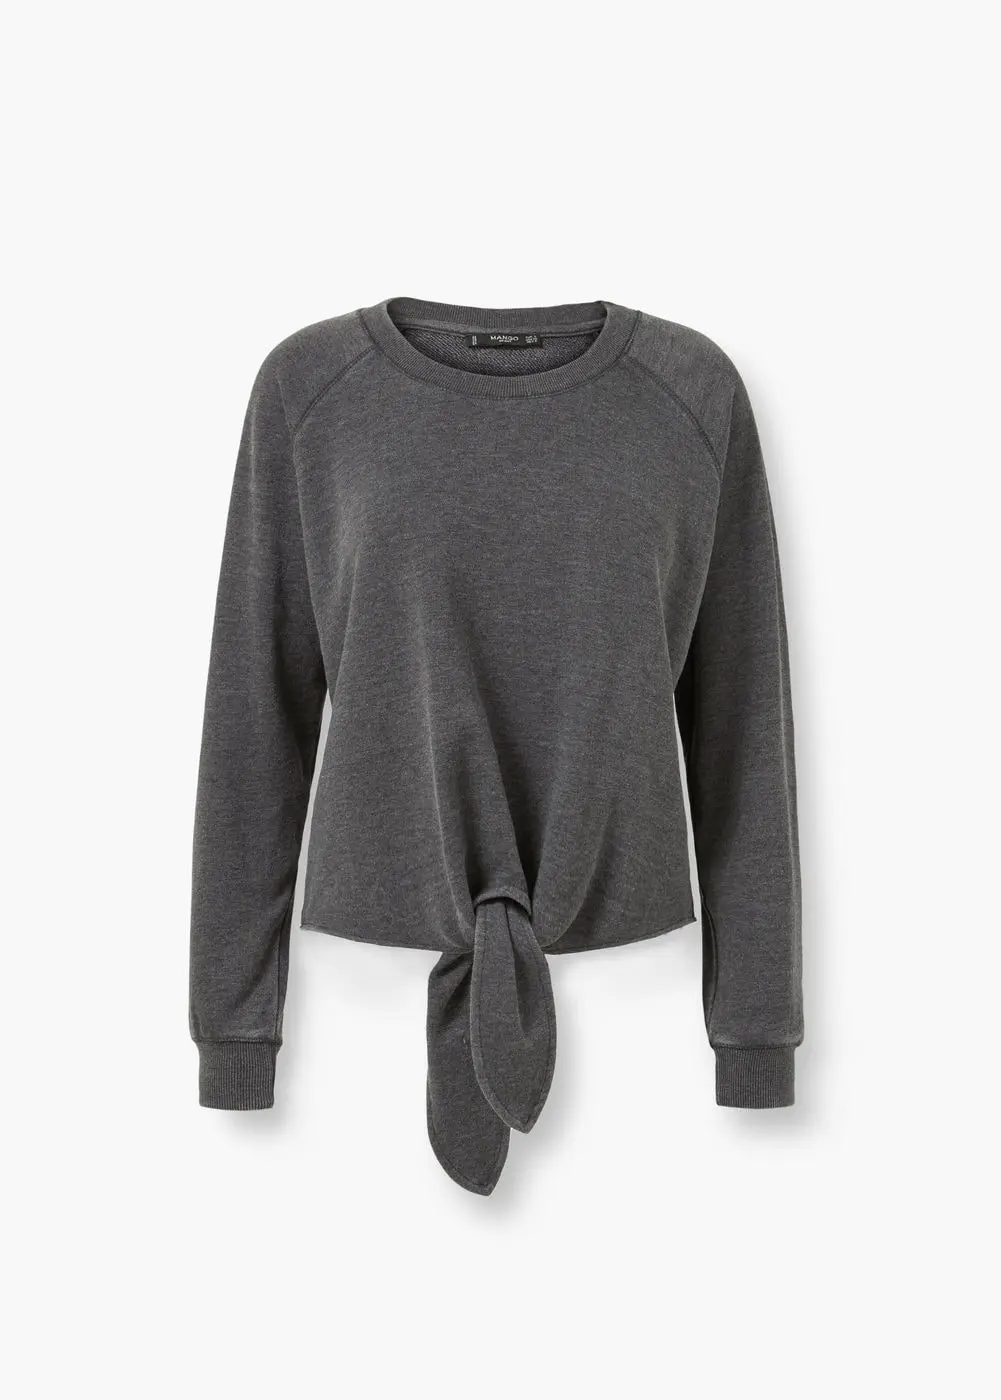 Knotted cotton-blend sweatshirt, Rp. 249.000. (Image: shop.mango.com)